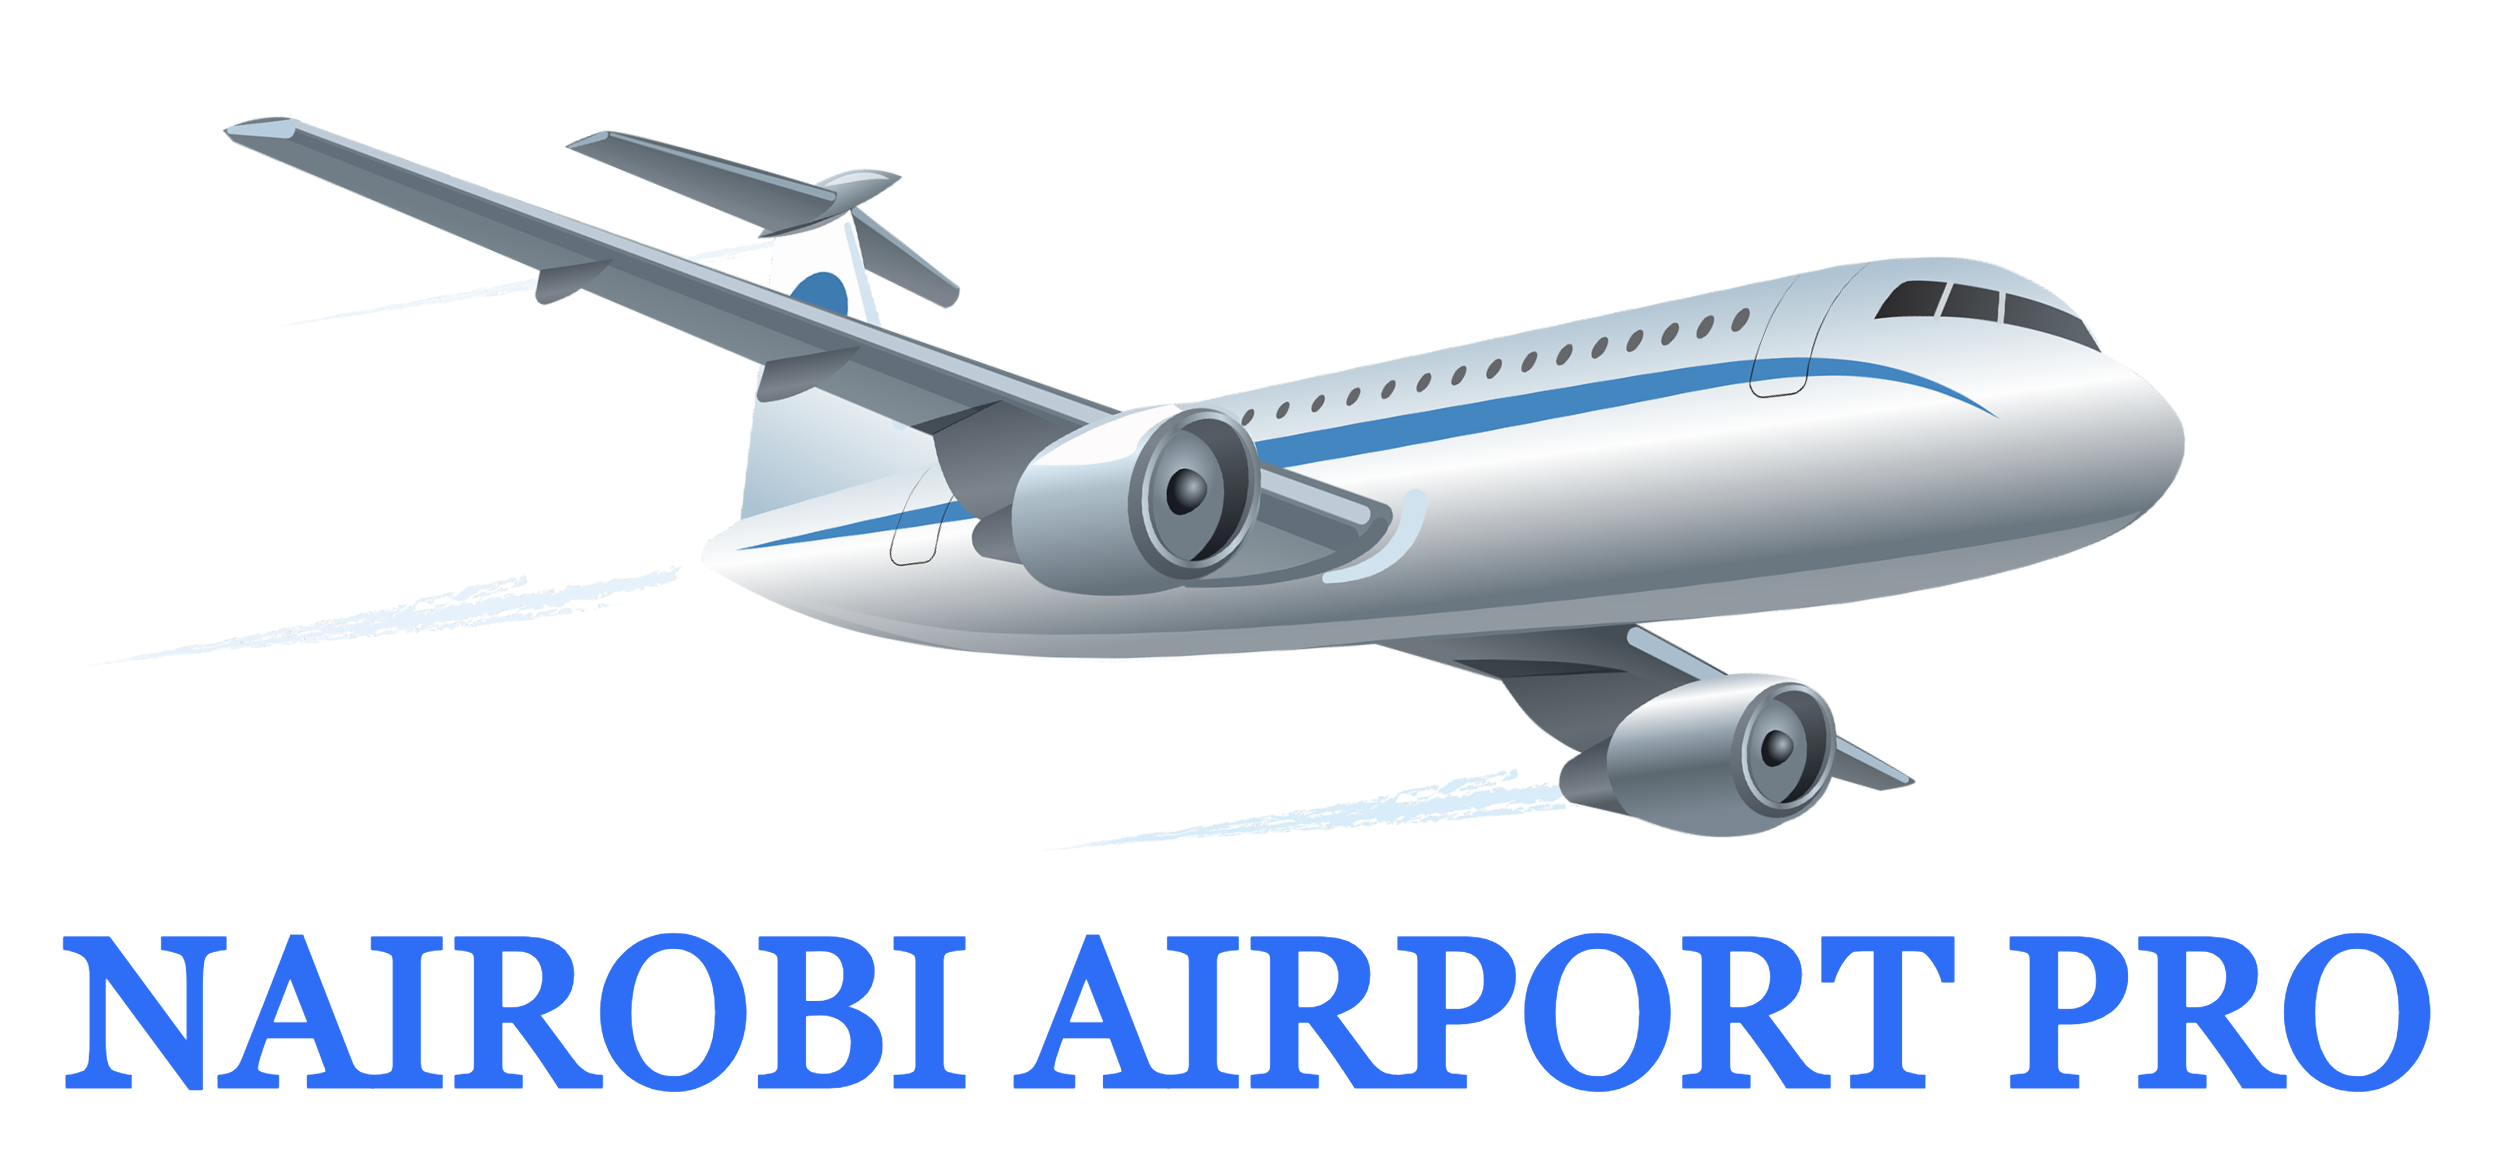 Nairobi Airport Pro | Westlands - Nairobi Airport Pro